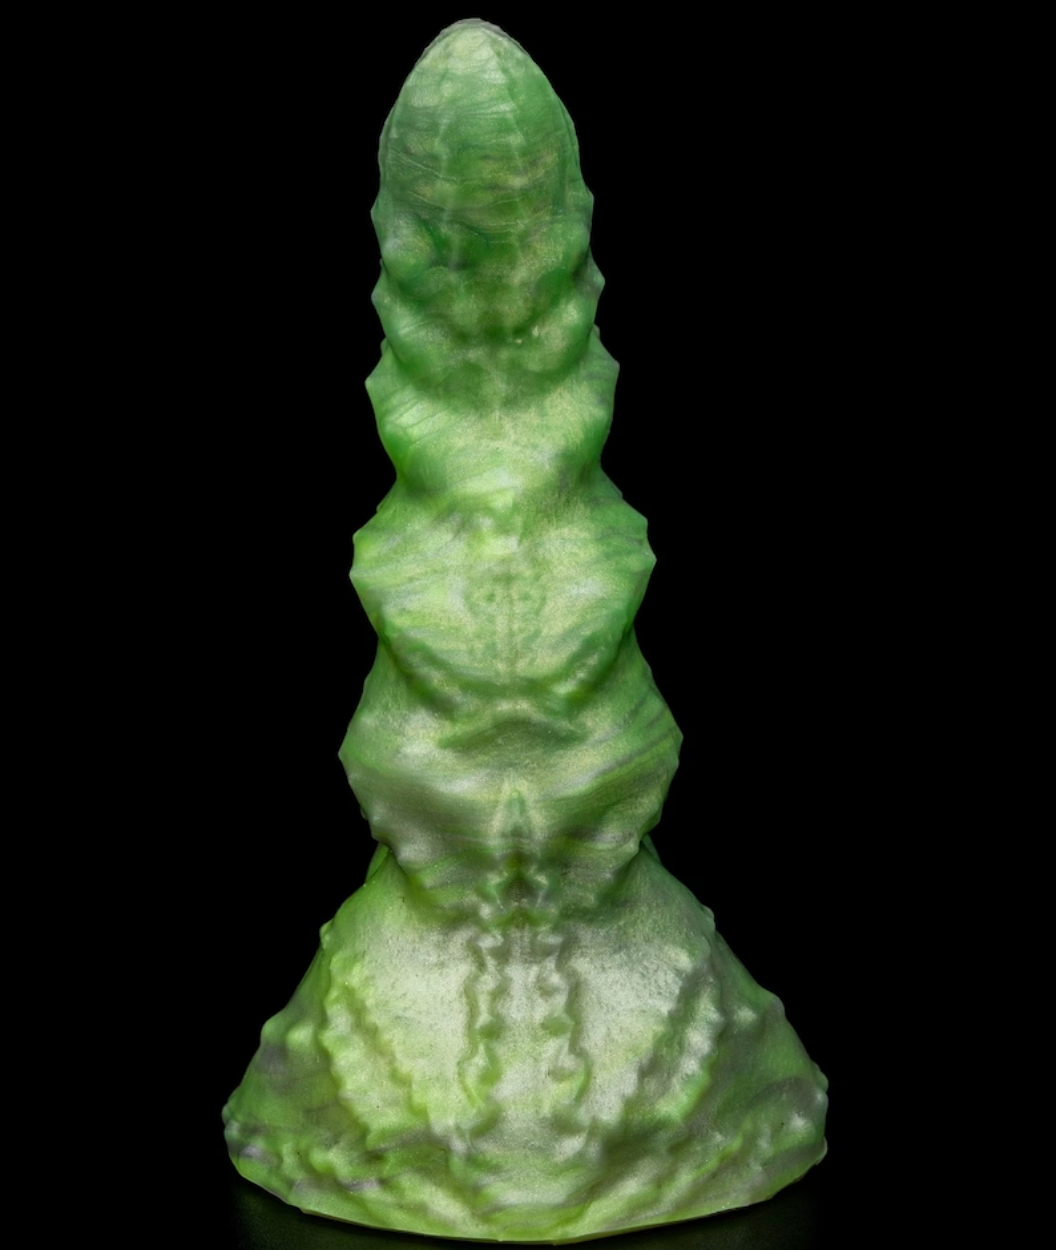 Green textured Pothead dildo